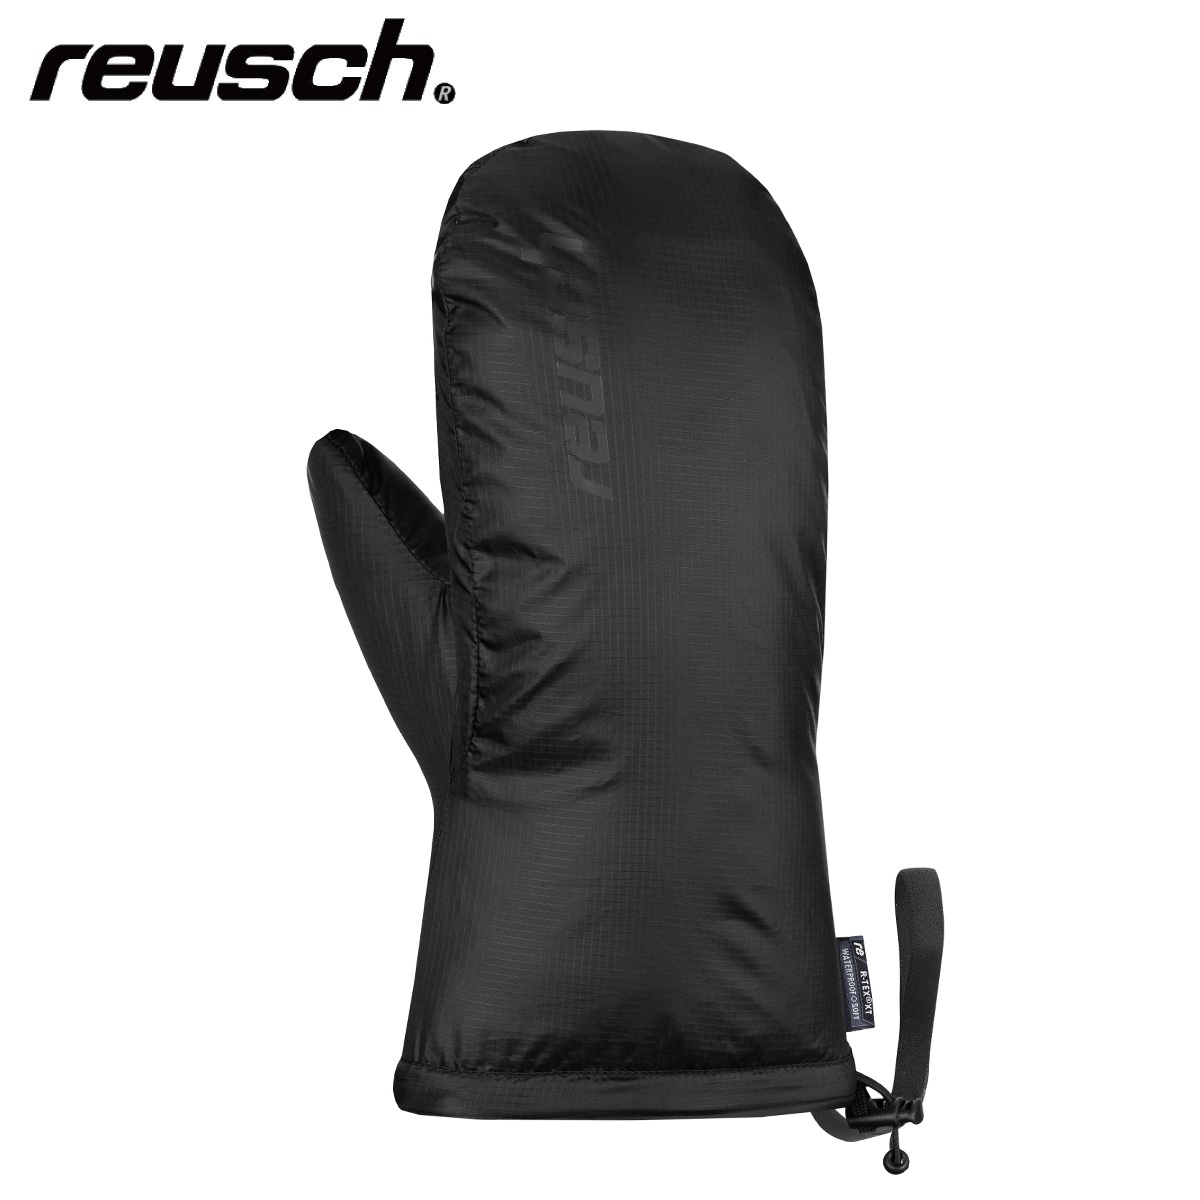 Skiwear Glove】REUSCH - Japanese and Ski Ski Brand Top Shop Gear - Sports Ski - Retailer Tanabe